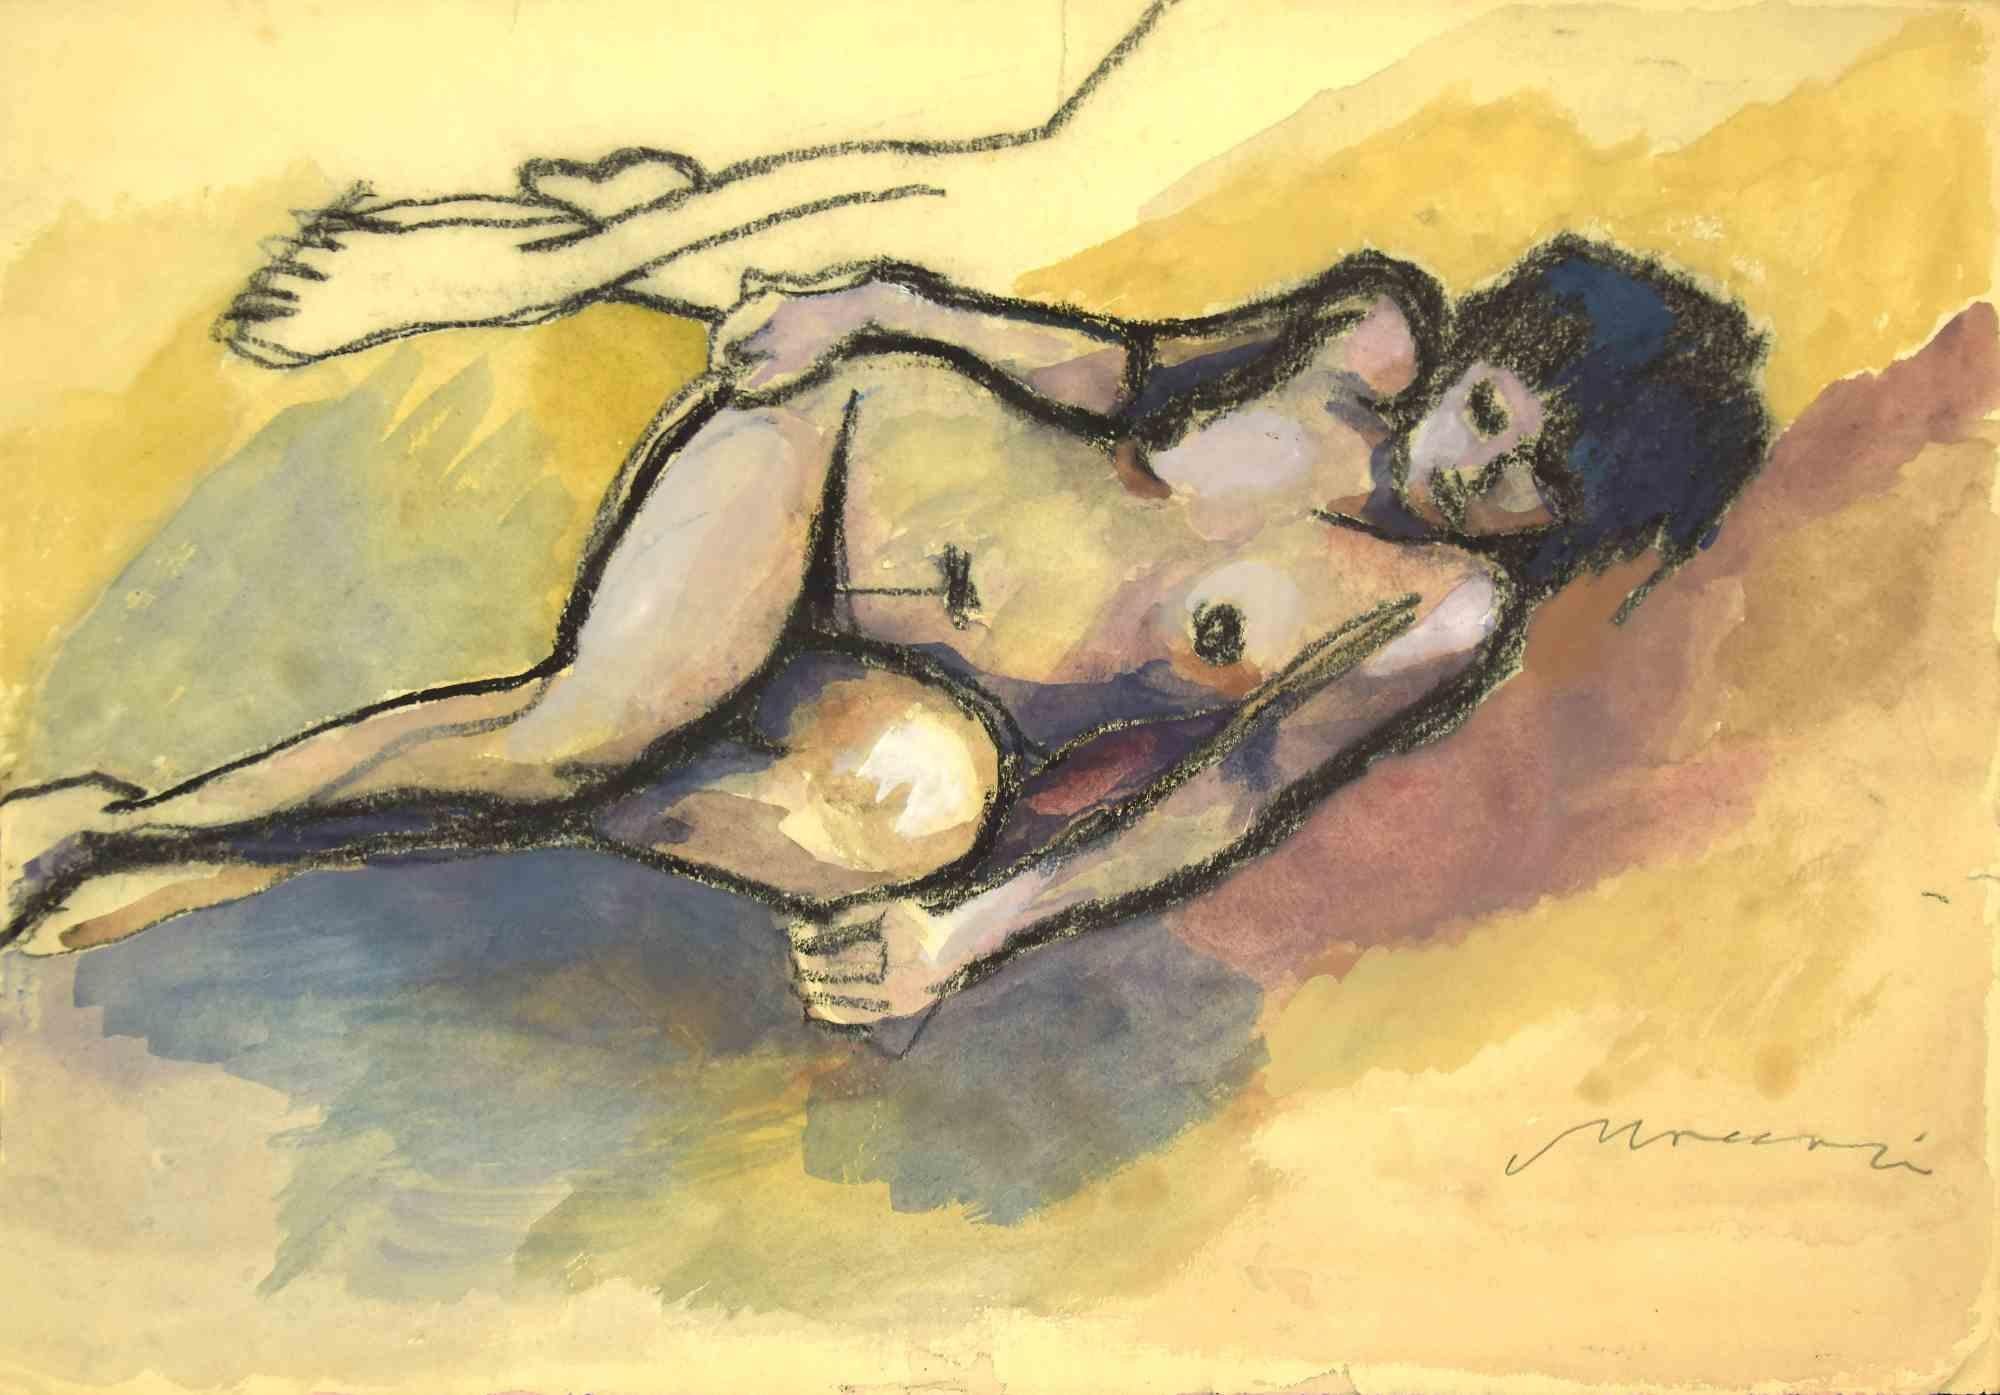 Nude ist eine Zeichnung in Kohle und Aquarell auf cremefarbenem Papier von Mino Maccari aus den 1930er Jahren.

rechts unten handsigniert.

Guter Zustand mit kleinen Faltungen und Beschnitt an den Rändern.

Mino Maccari (1898-1989) war ein